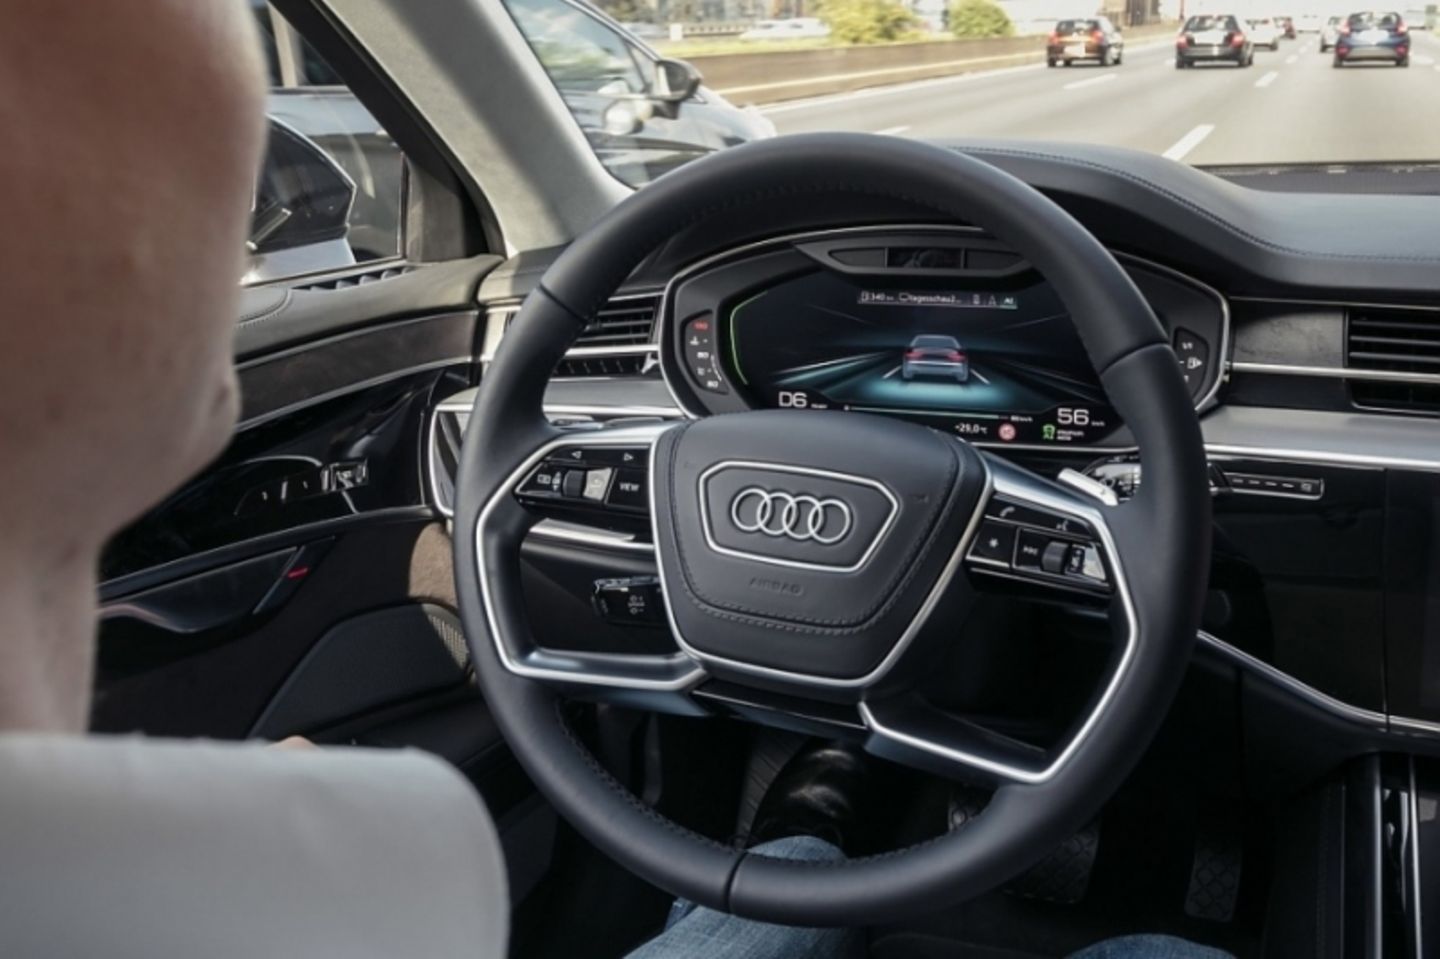 Audi demonstrierte beim A8 autonomes Fahren des Level 3, aber noch fehlen die gesetzlichen Grundlagen